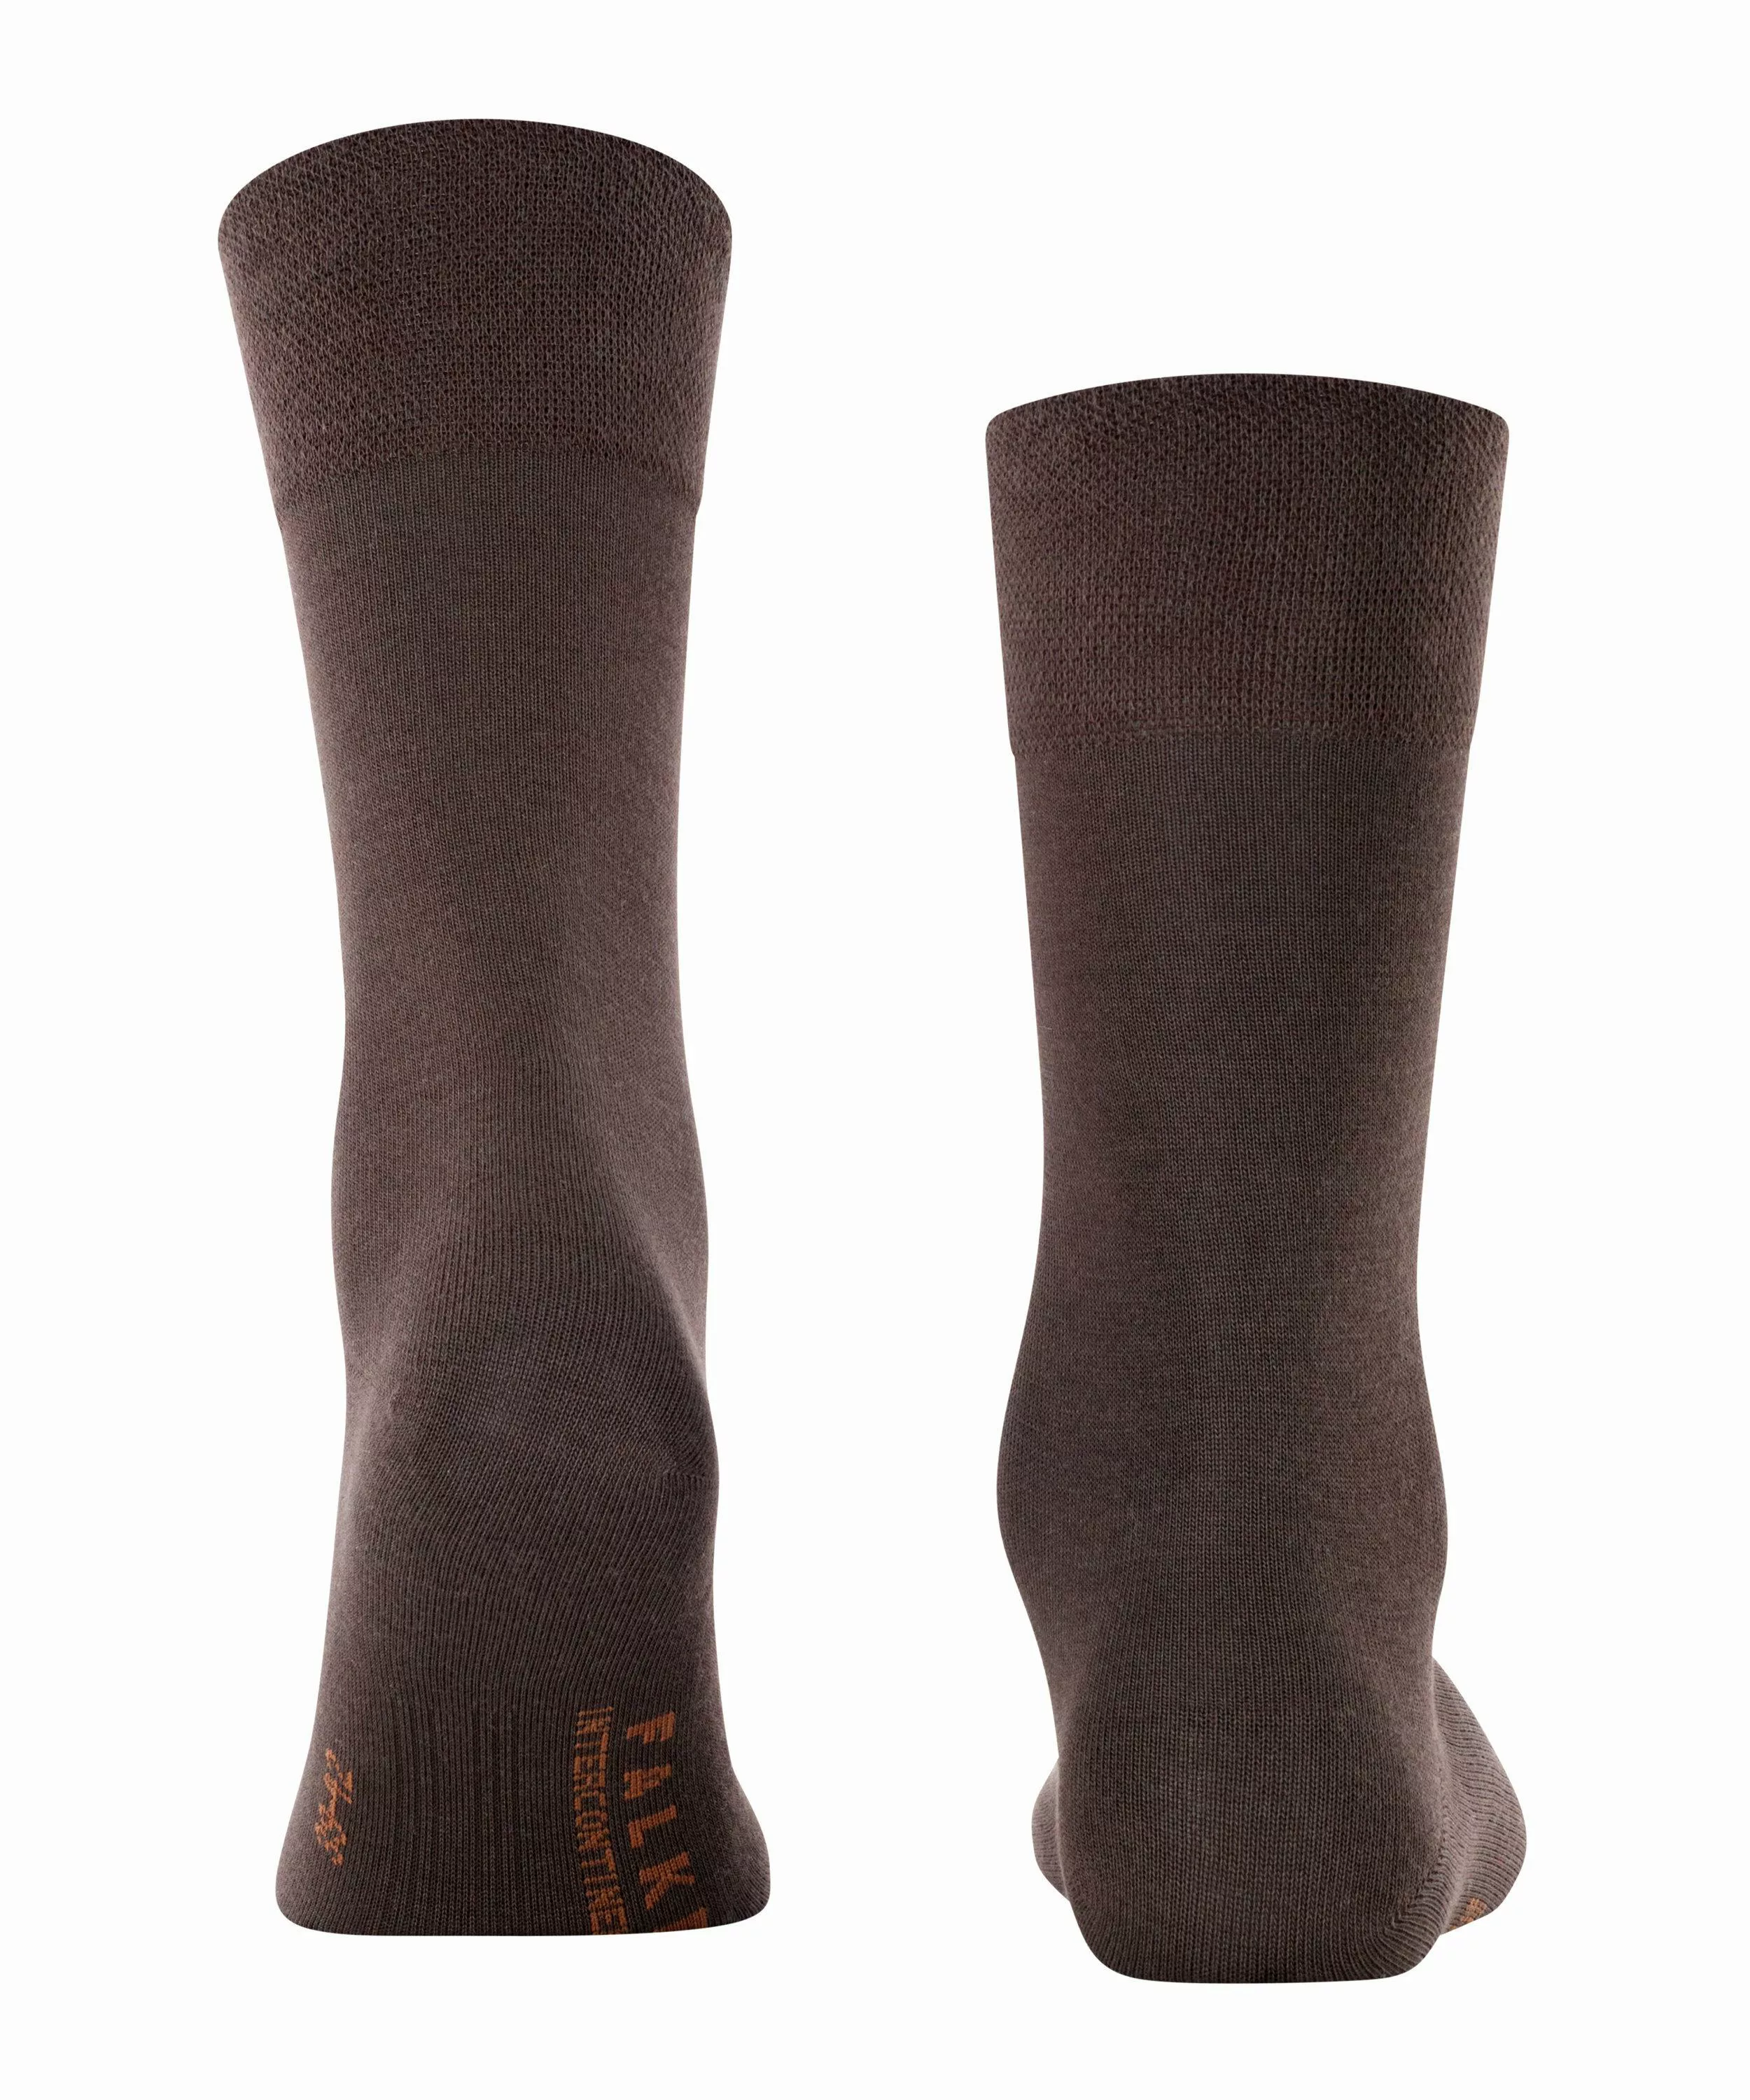 FALKE Sensitive Intercontinental Herren Socken, 39-42, Braun, Uni, 13240-59 günstig online kaufen